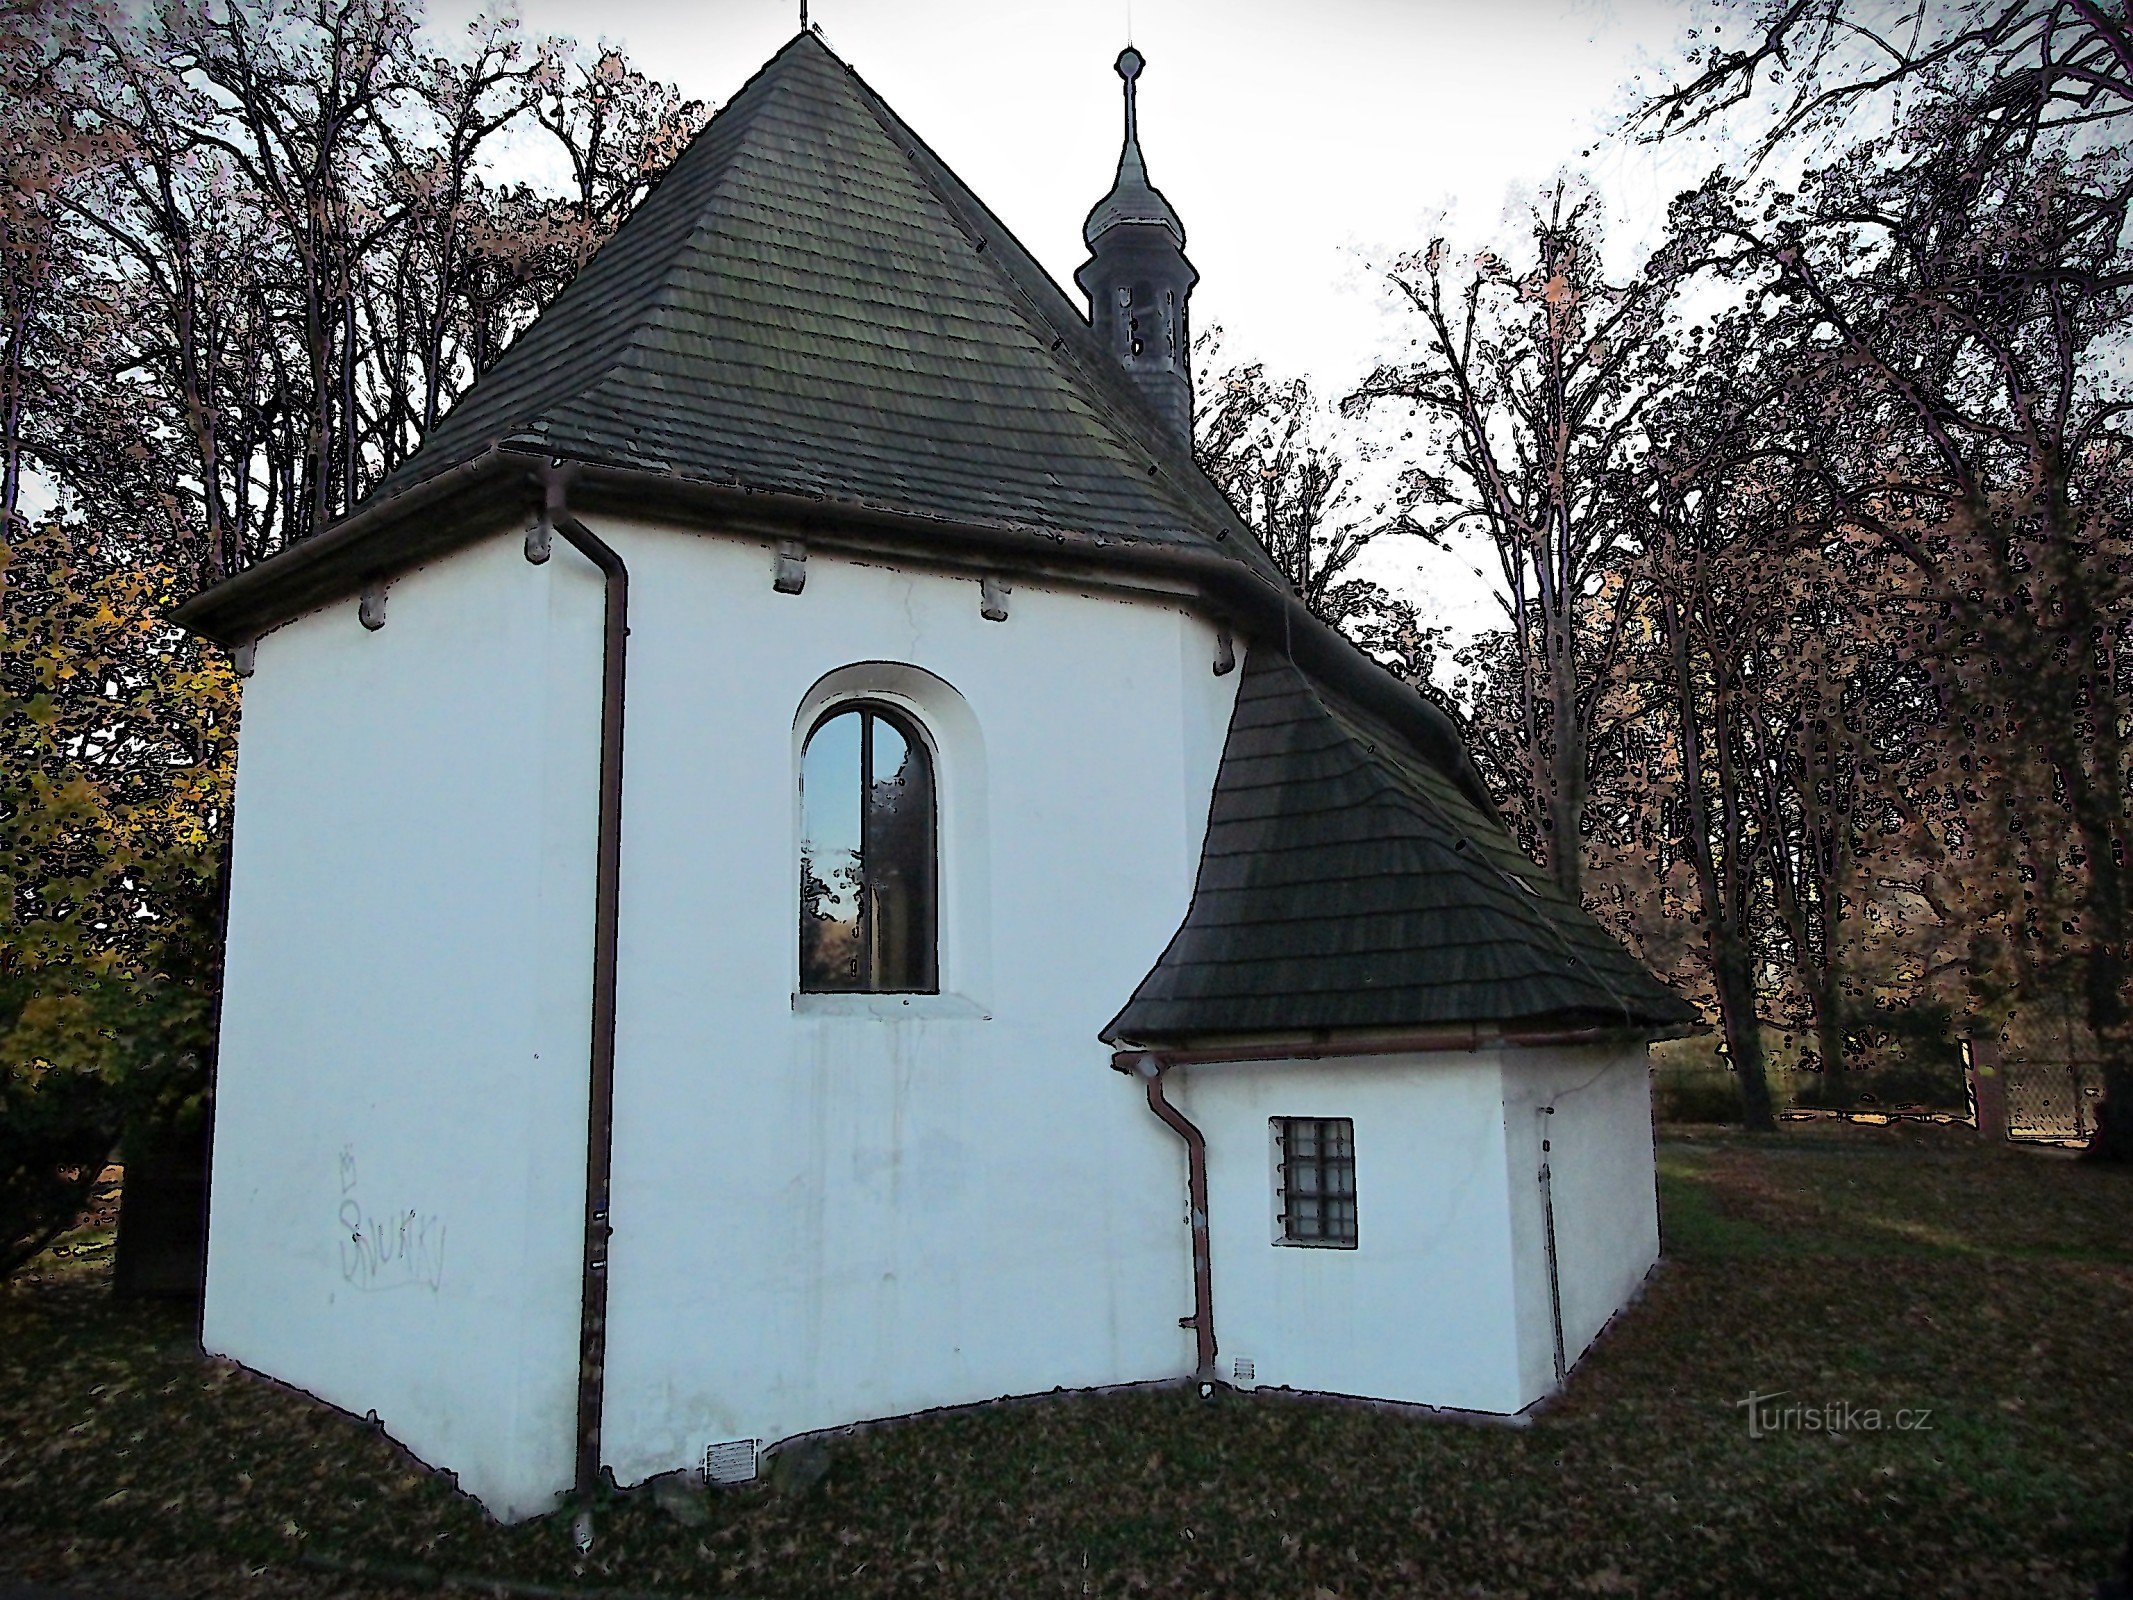 Valašské Meziříčí - Η όμορφη εκκλησία του Αγίου Ιακώβου